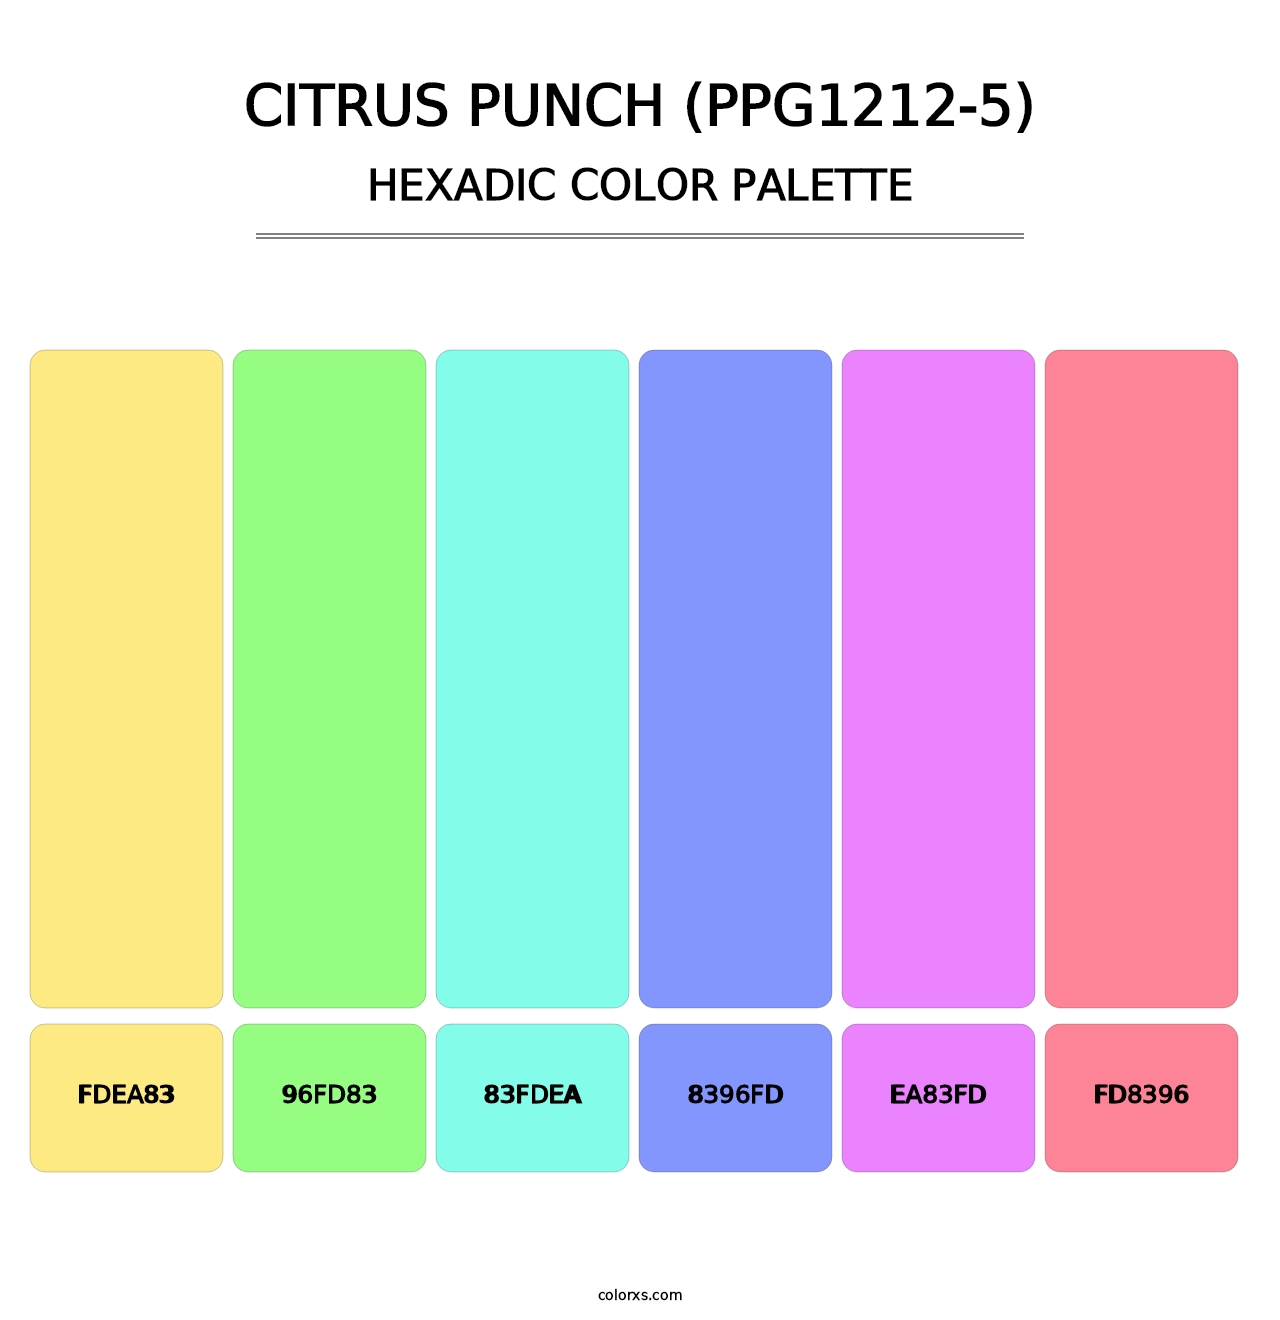 Citrus Punch (PPG1212-5) - Hexadic Color Palette